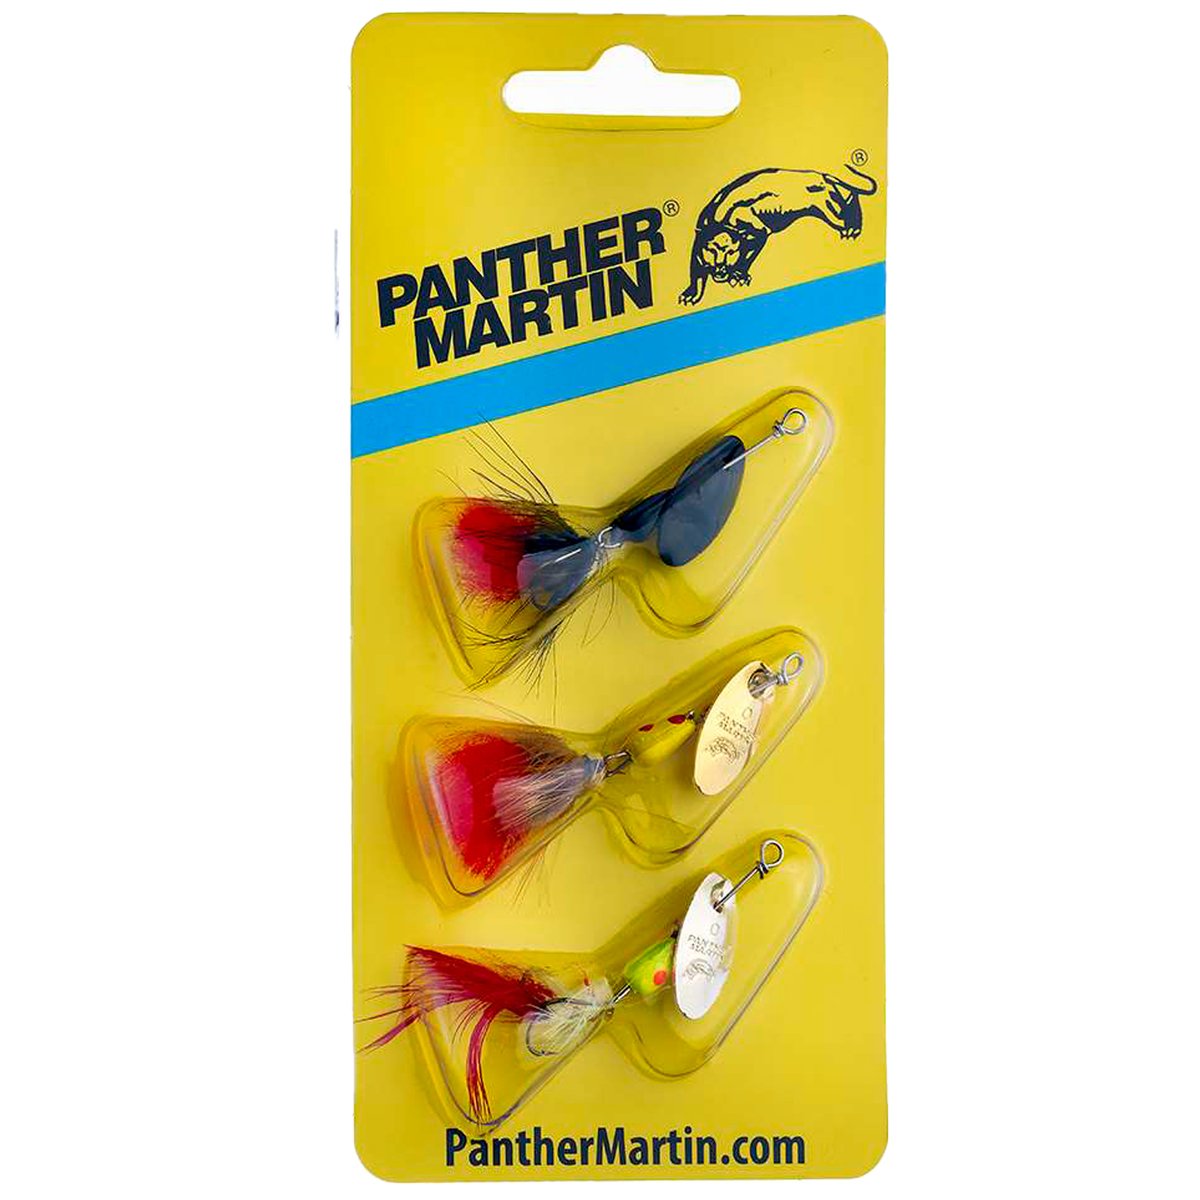 https://www.sportsmans.com/medias/panther-martin-minifly-3-pack-in-line-spinner-kit-1683616-1.jpg?context=bWFzdGVyfGltYWdlc3w1NDgyODZ8aW1hZ2UvanBlZ3xhVzFoWjJWekwyZzRZUzlvTlRrdk9Ua3pPRGMzTmpZNE5qWXlNaTVxY0djfGYxNTFiMDg1OTc2N2MwYmUwMDkzZmQ2ZjVlNWY2ZDJmODQ1MDJhM2YxNWJkNGYxMzk1MzYxYmMwZmFhOTEzY2Y